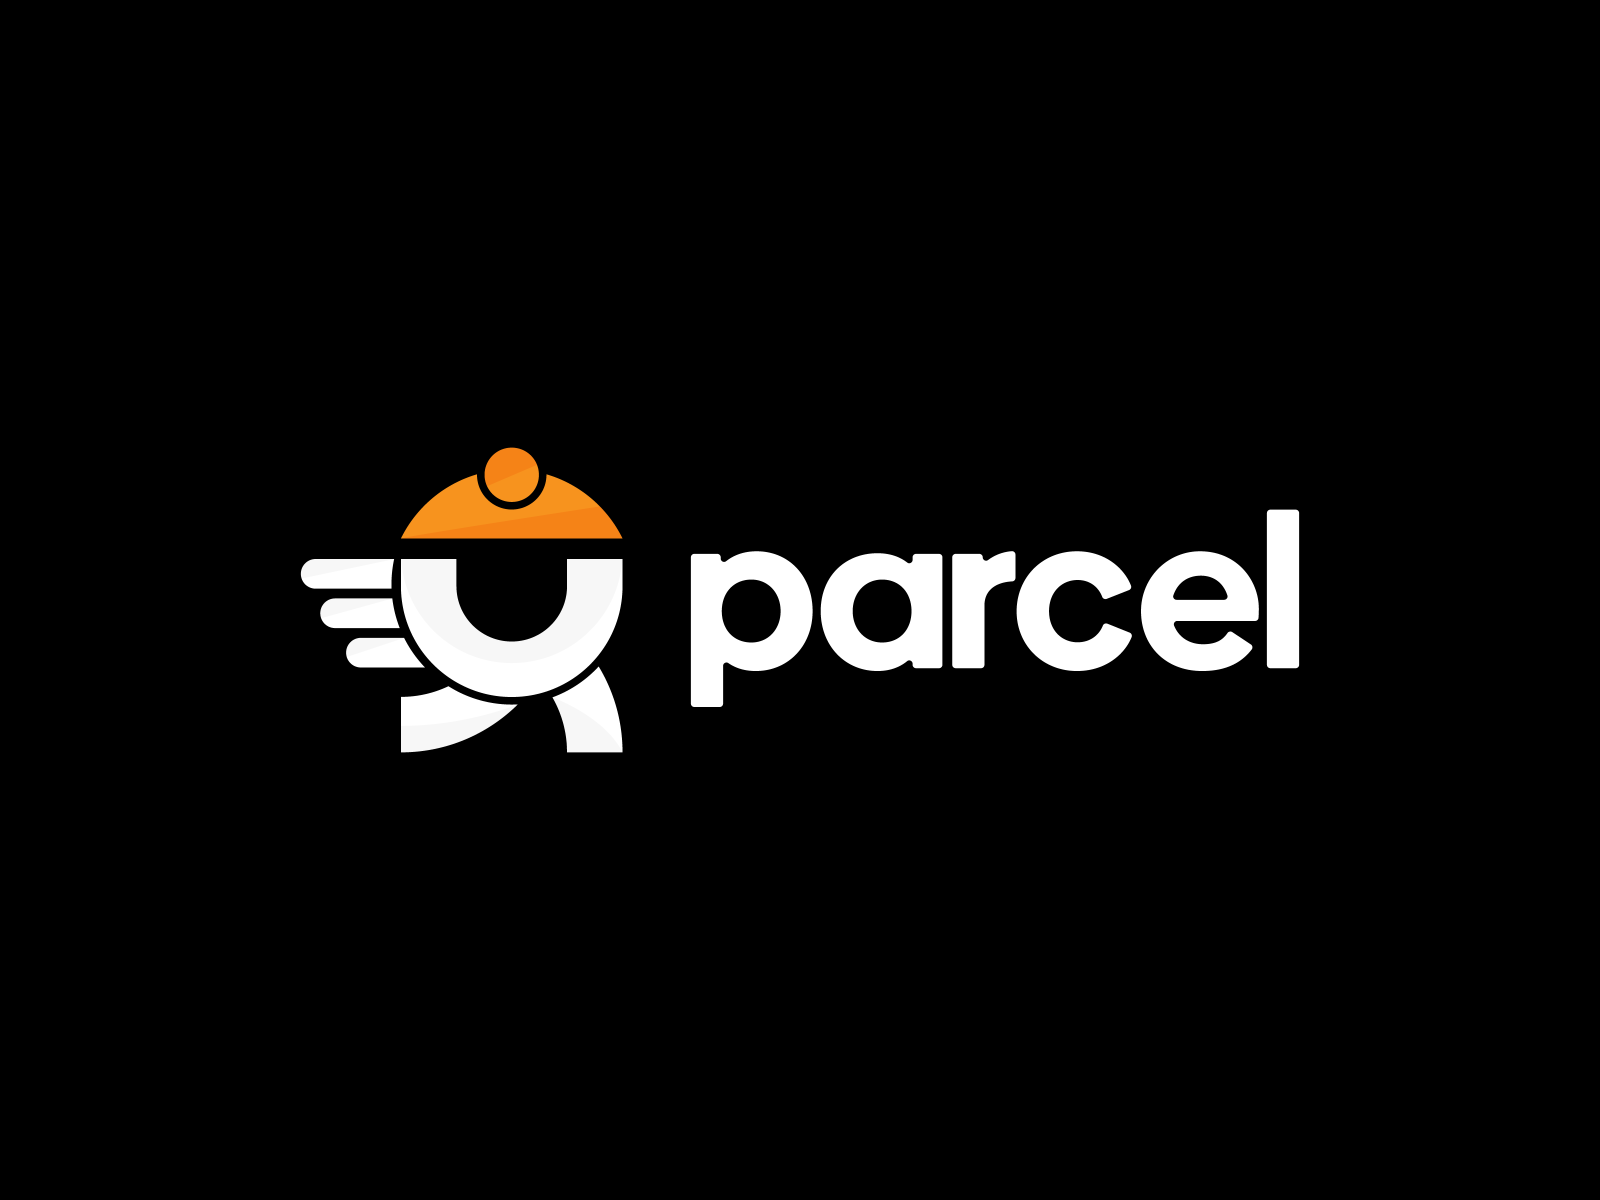 Download United Parcel Service (UPS) Logo in SVG Vector or PNG File Format  - Logo.wine